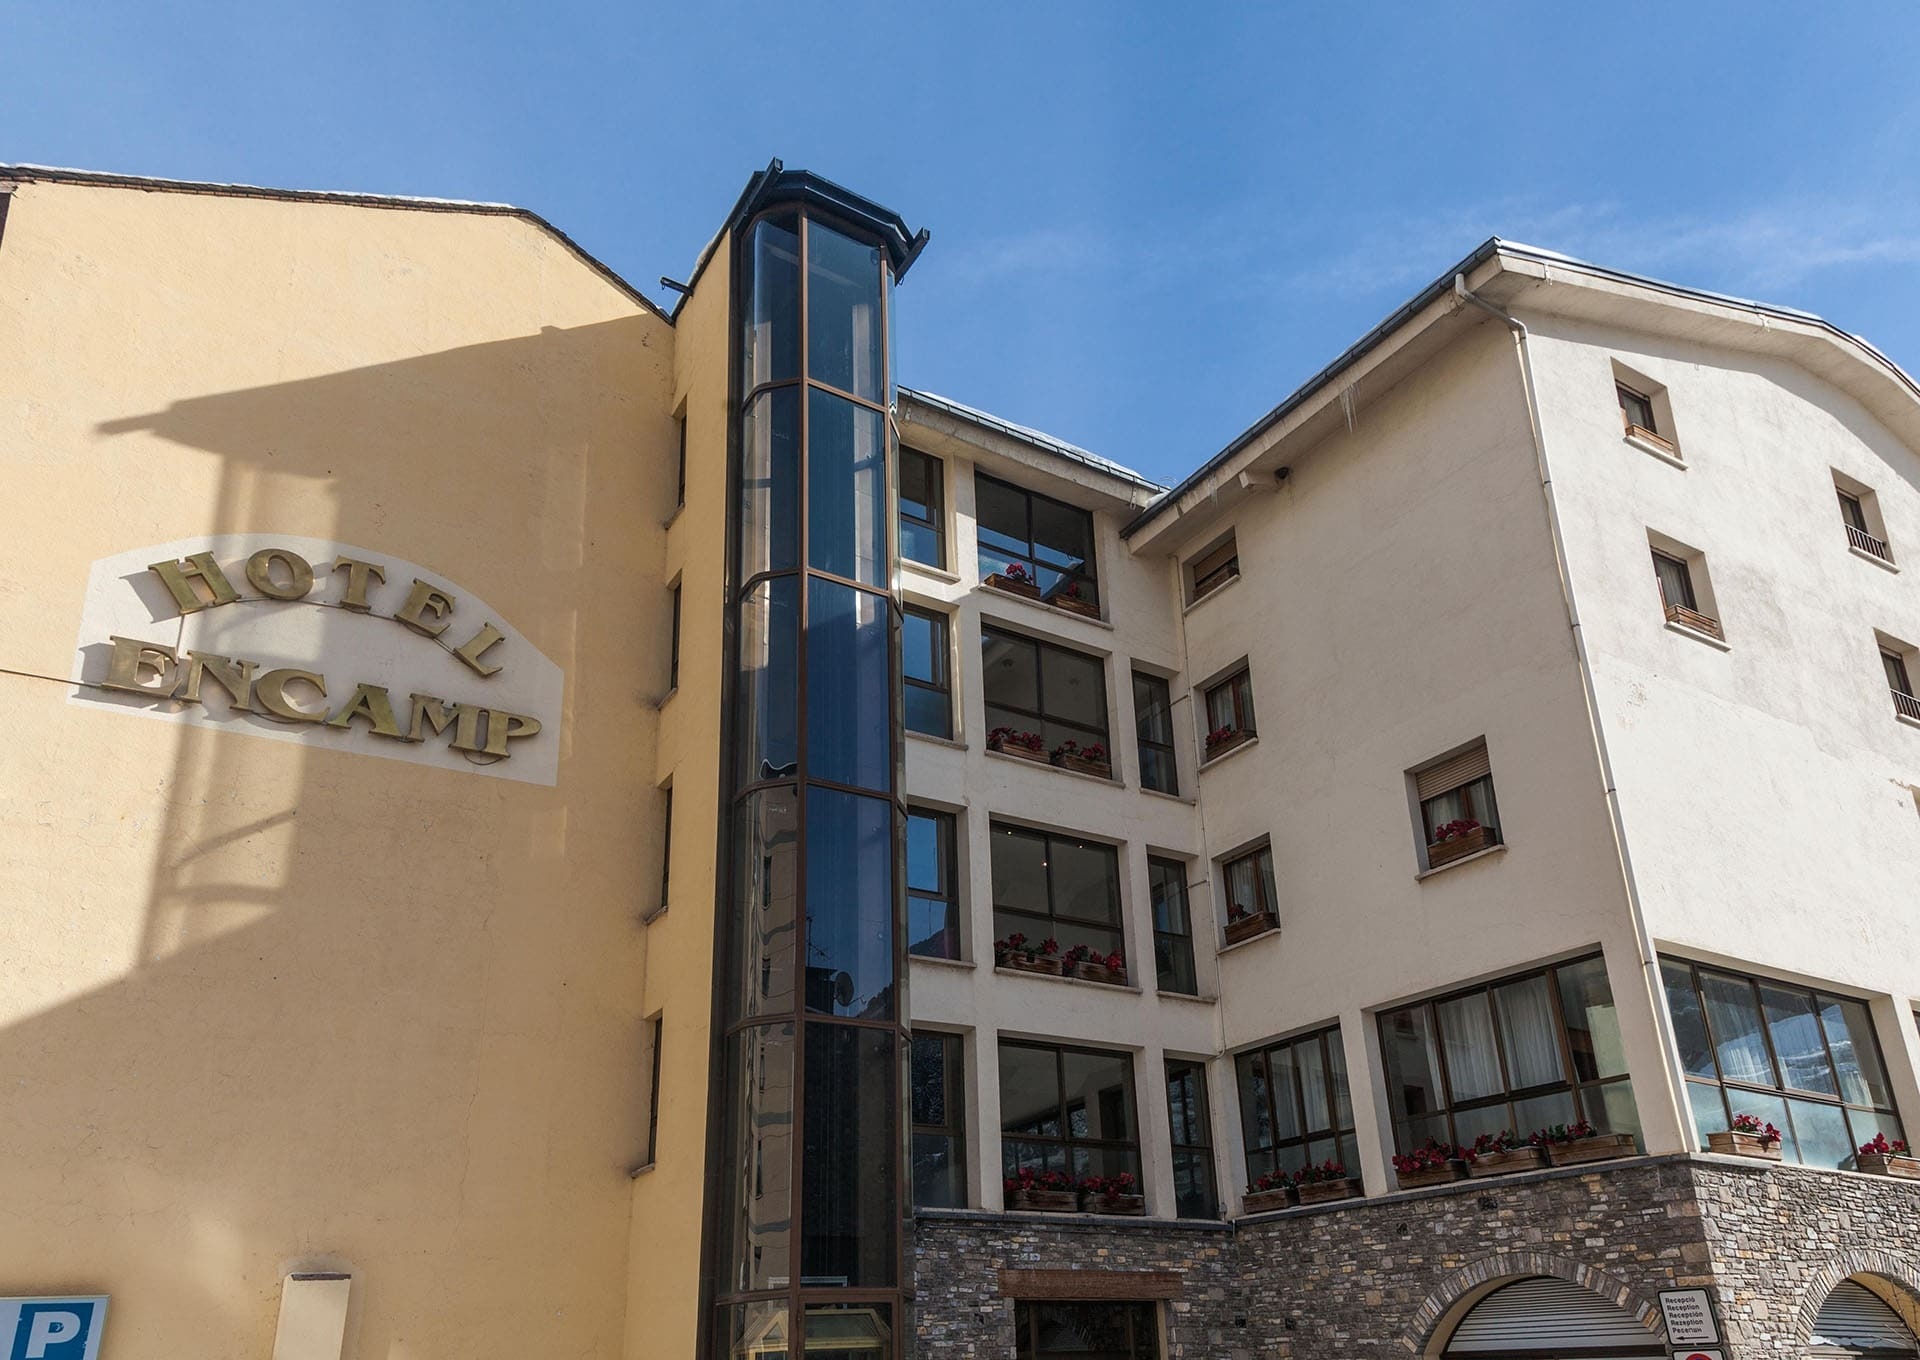 Hotansa | Hoteles en Andorra